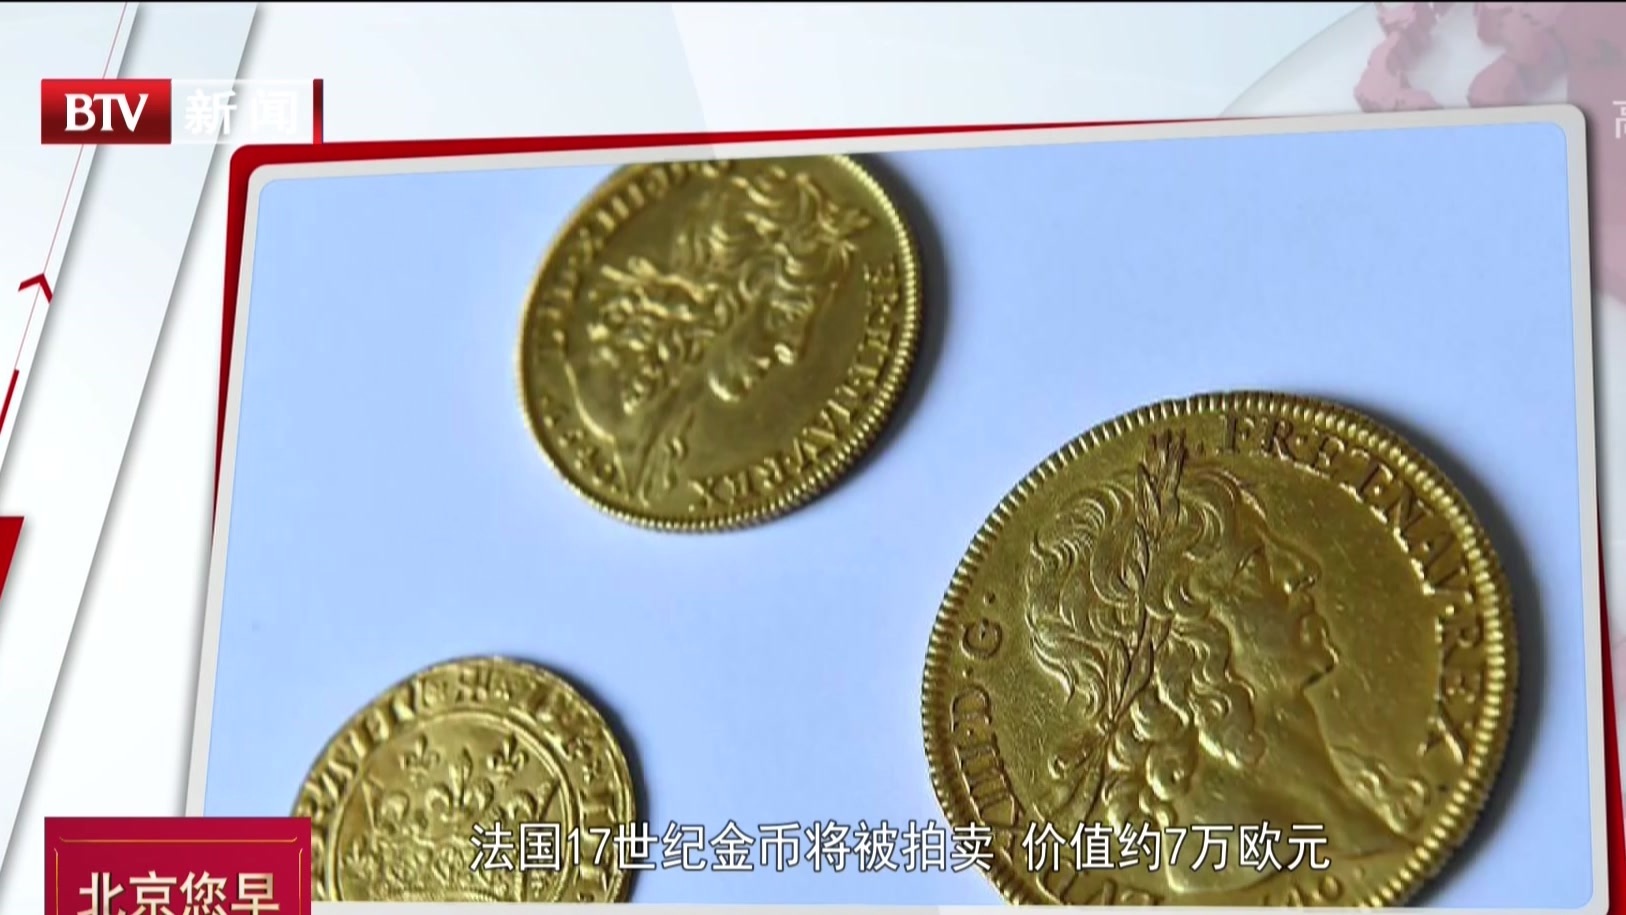 法国17世纪纪念币将被拍卖  价值约7万欧元